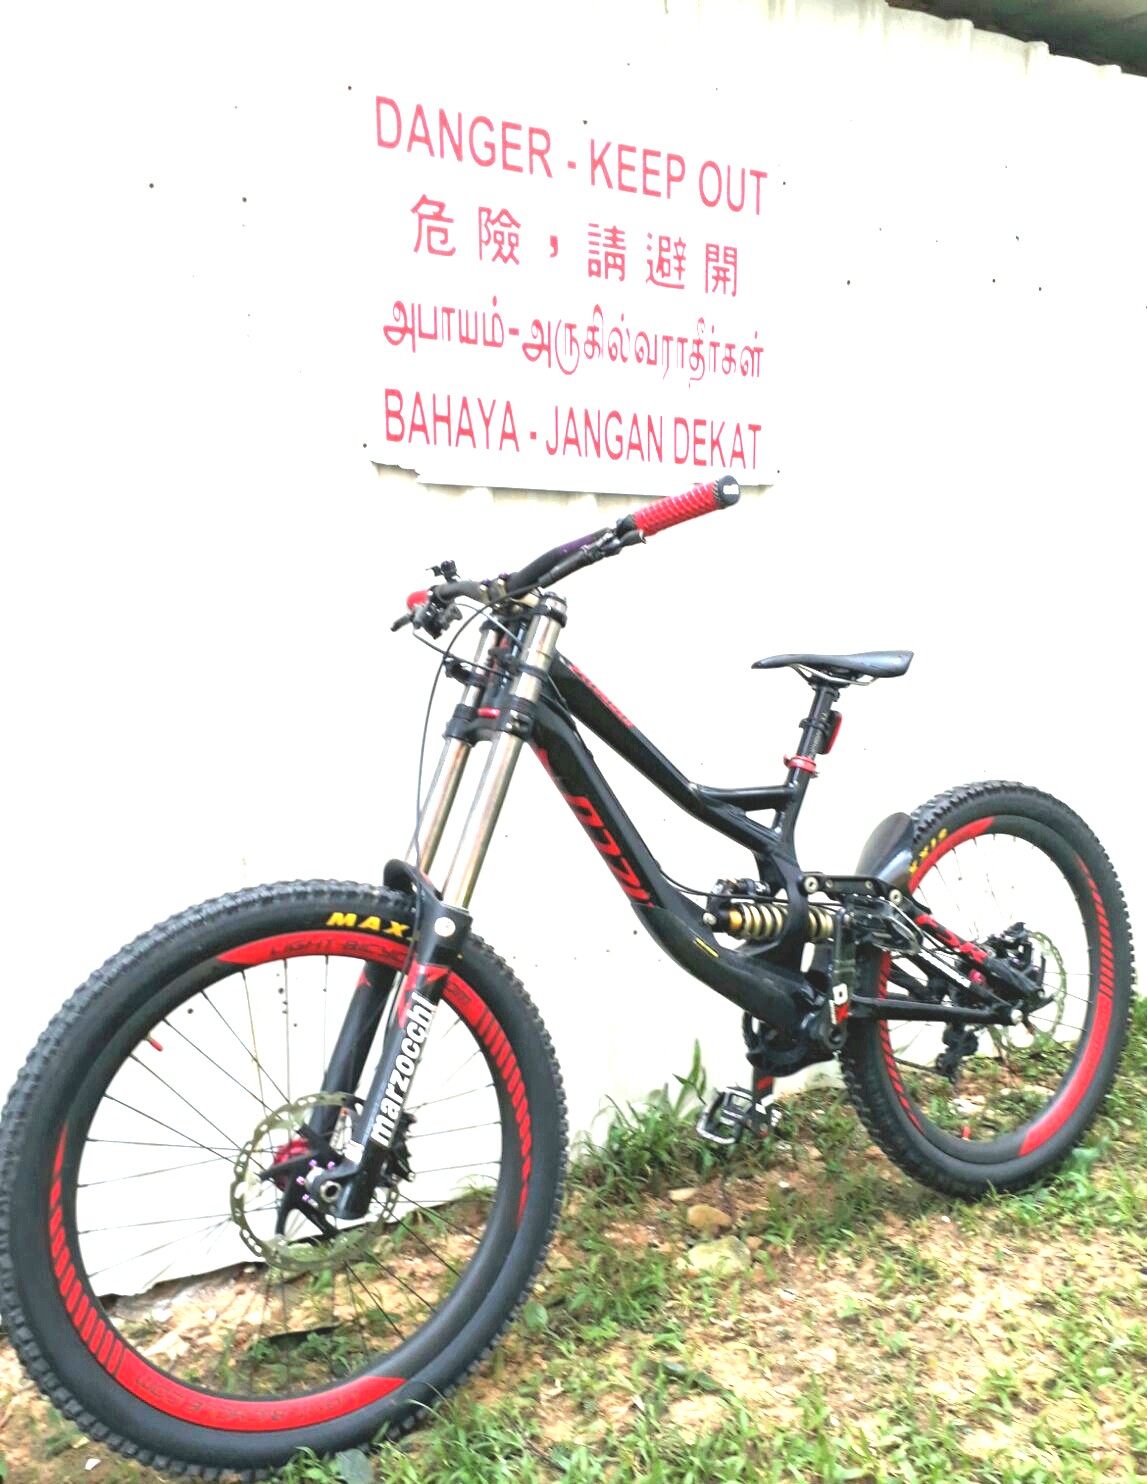 specialized downhill mountain bike